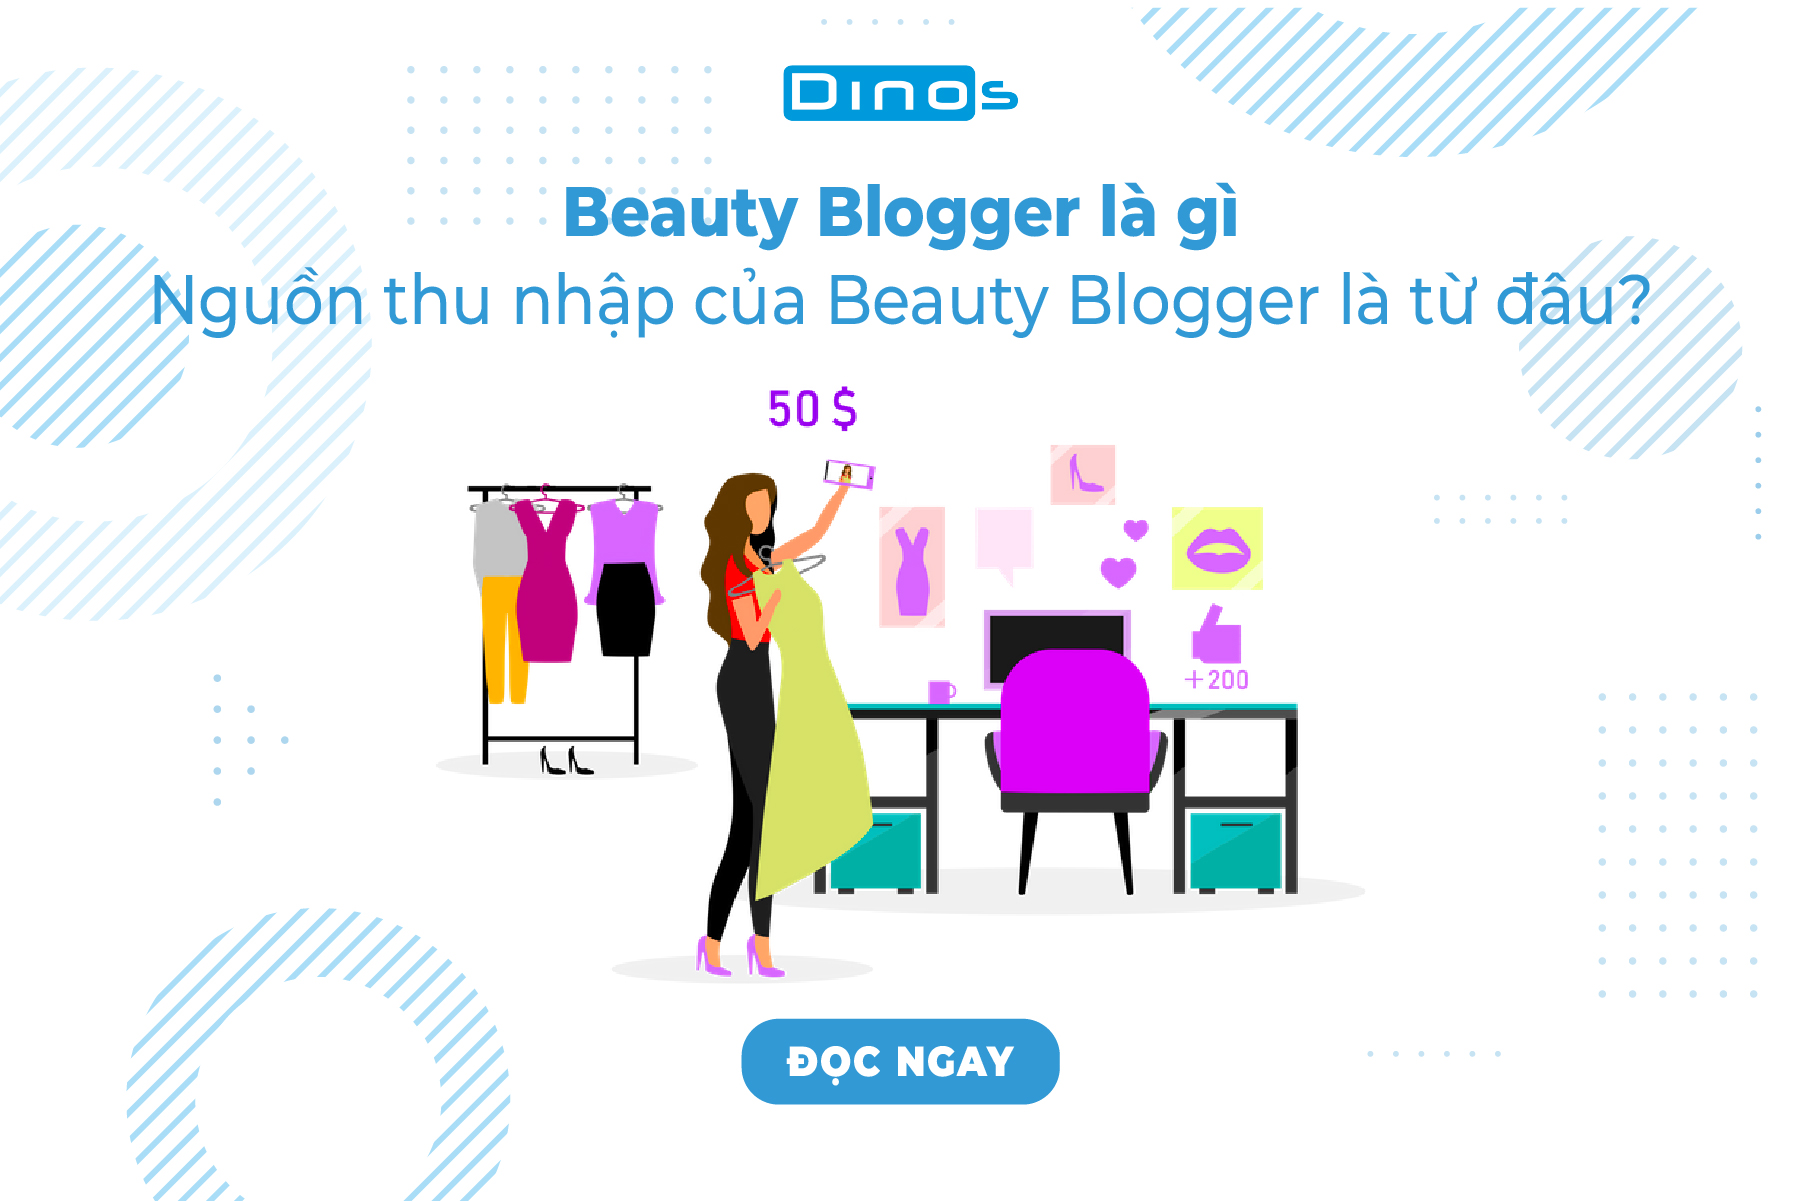 Beauty Blogger là gì và nguồn thu nhập của họ là từ đâu